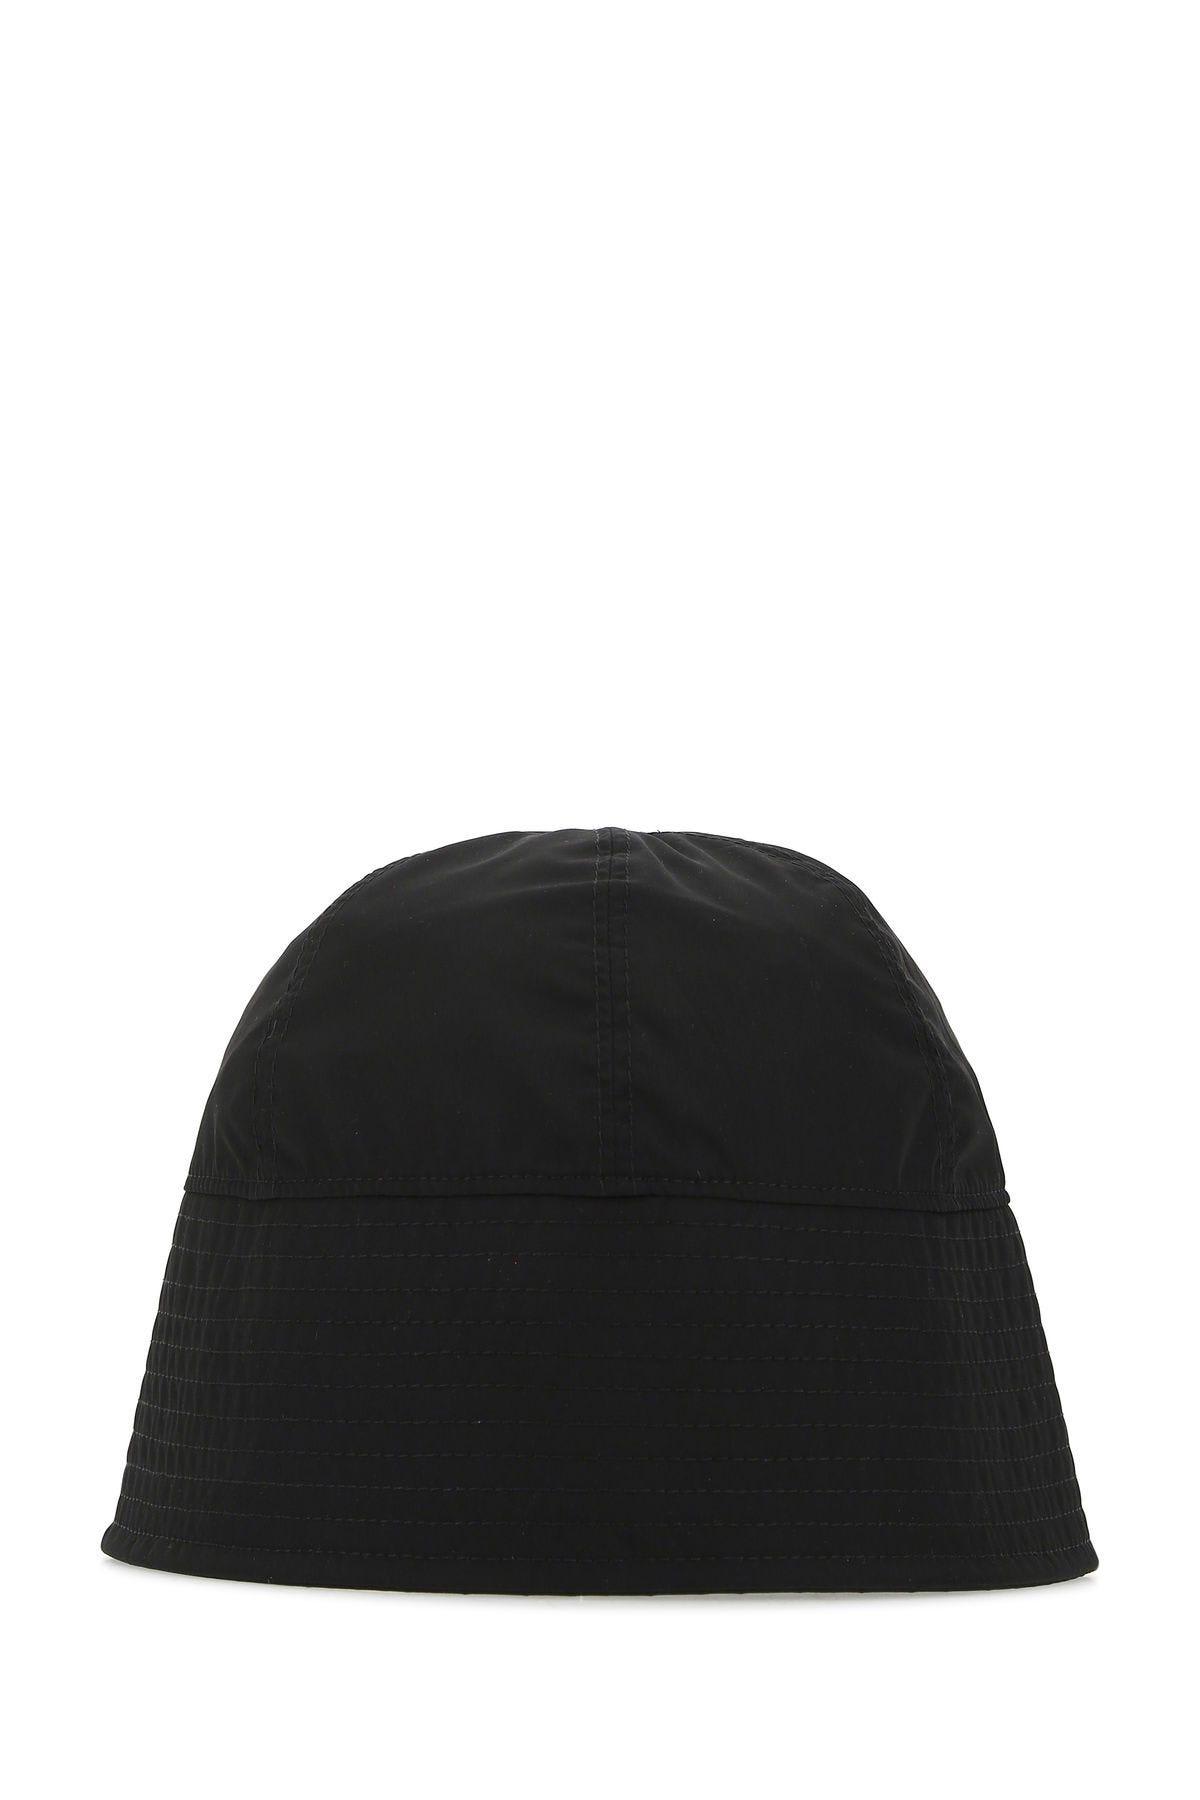 1017 ALYX 9SM Black Nylon Hat